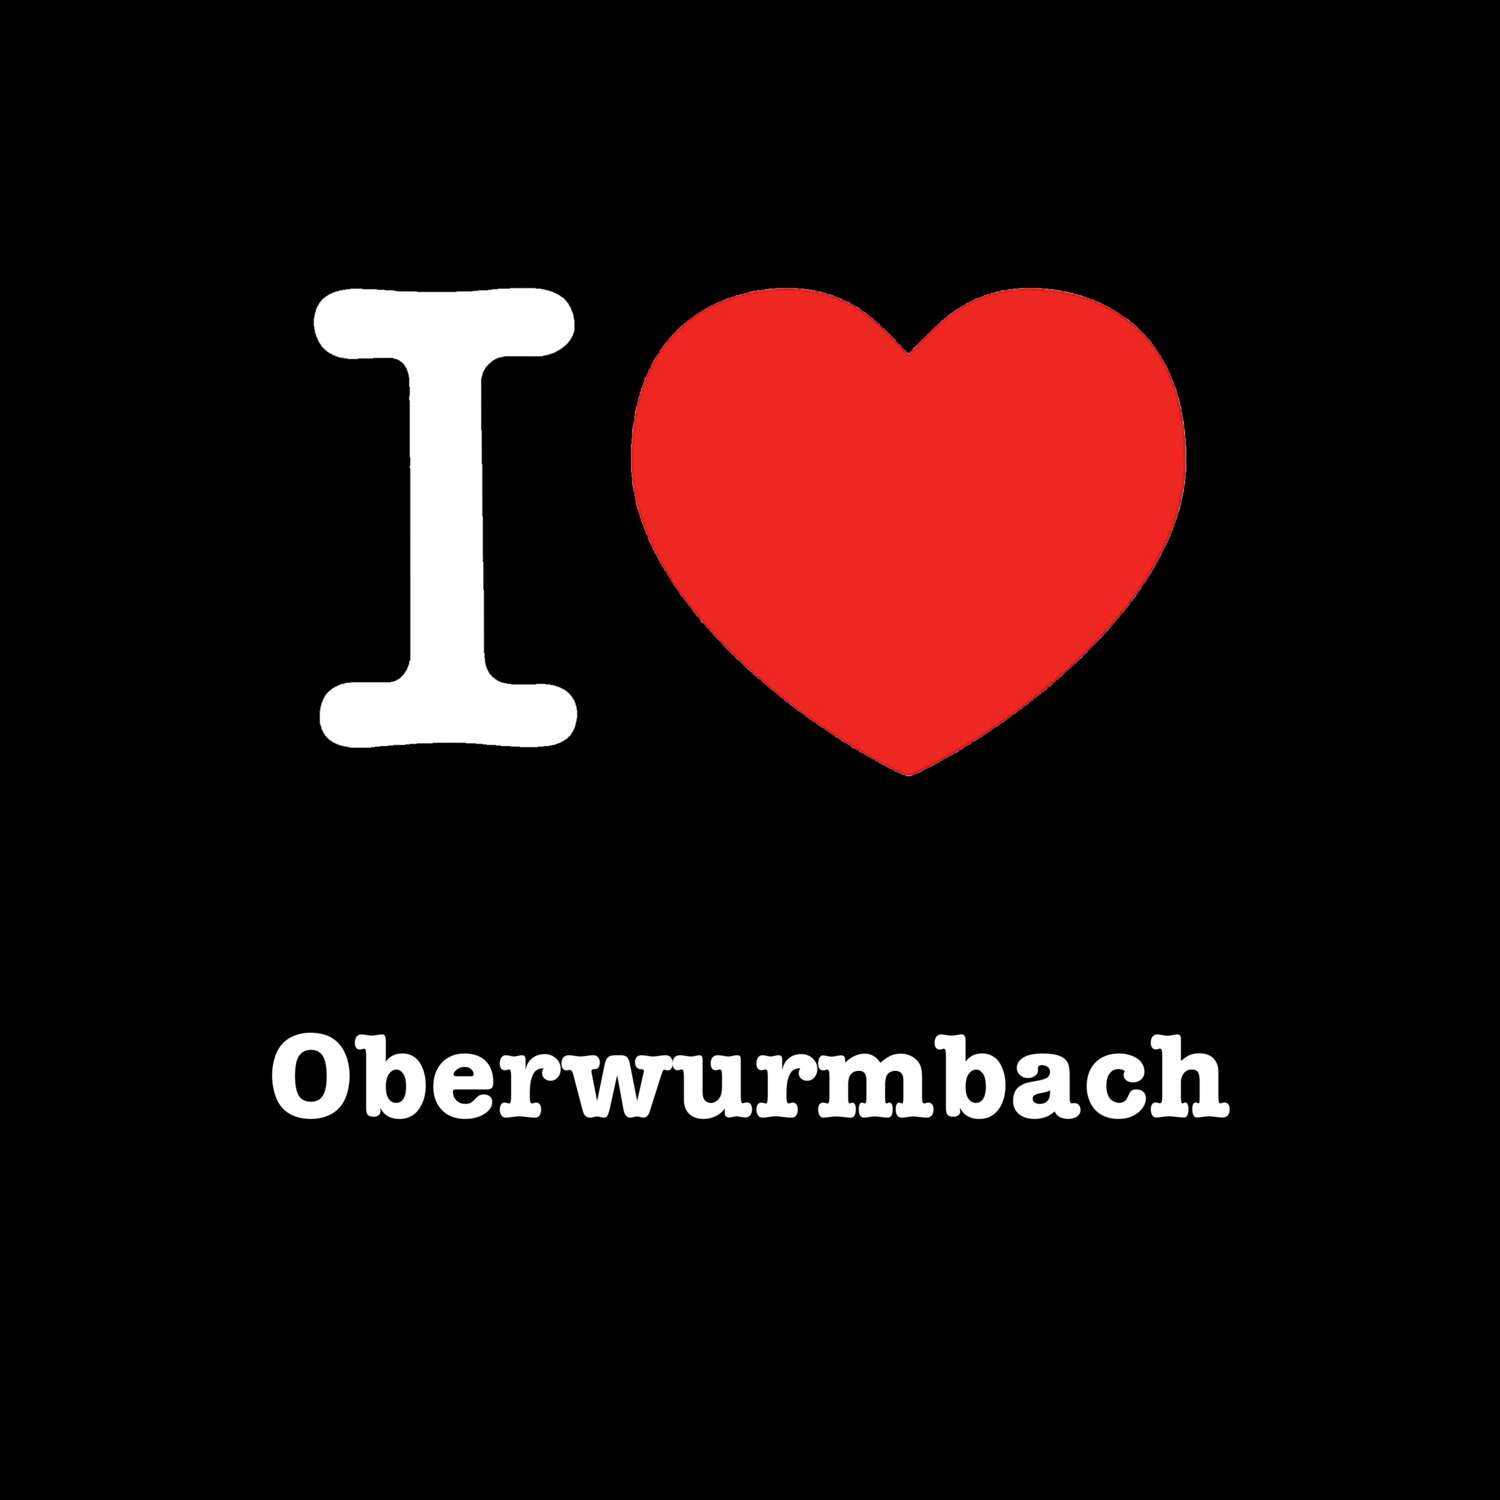 Oberwurmbach T-Shirt »I love«